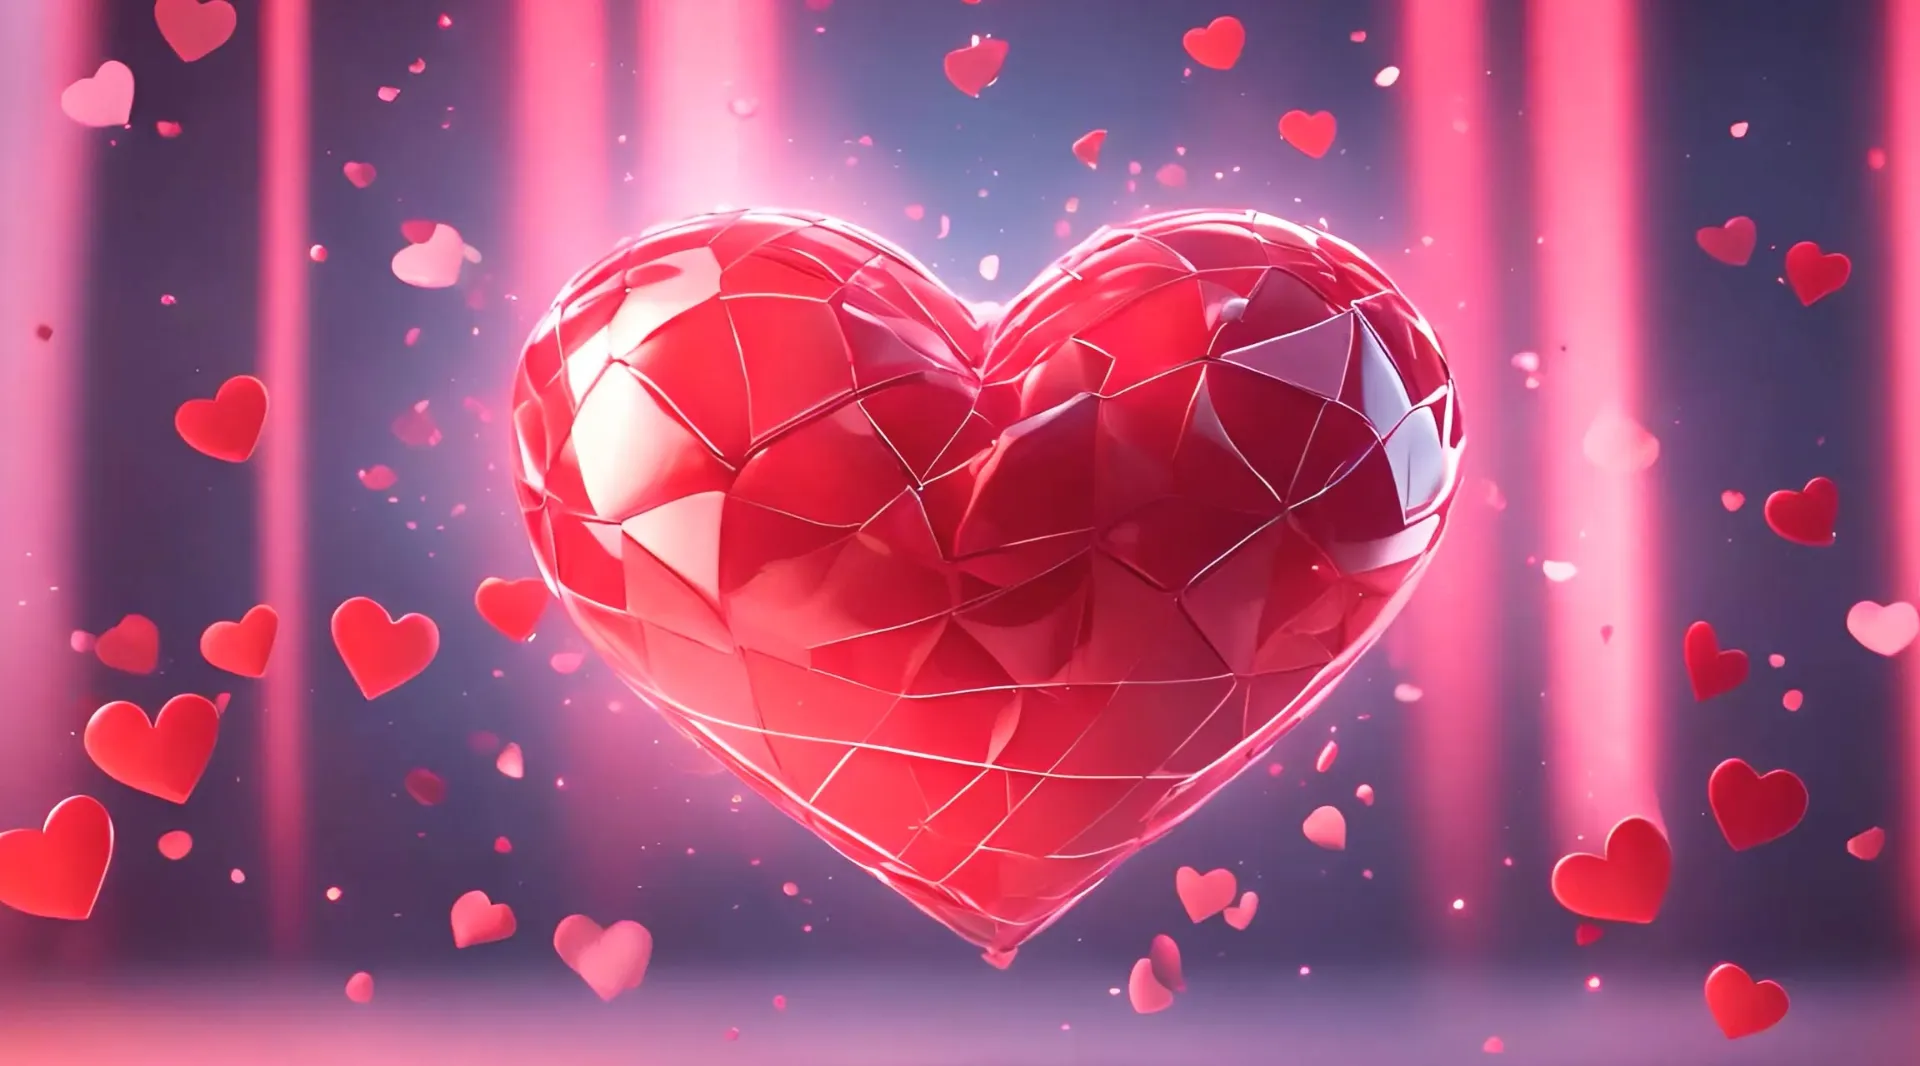 Modern Romance Abstract Heart Design